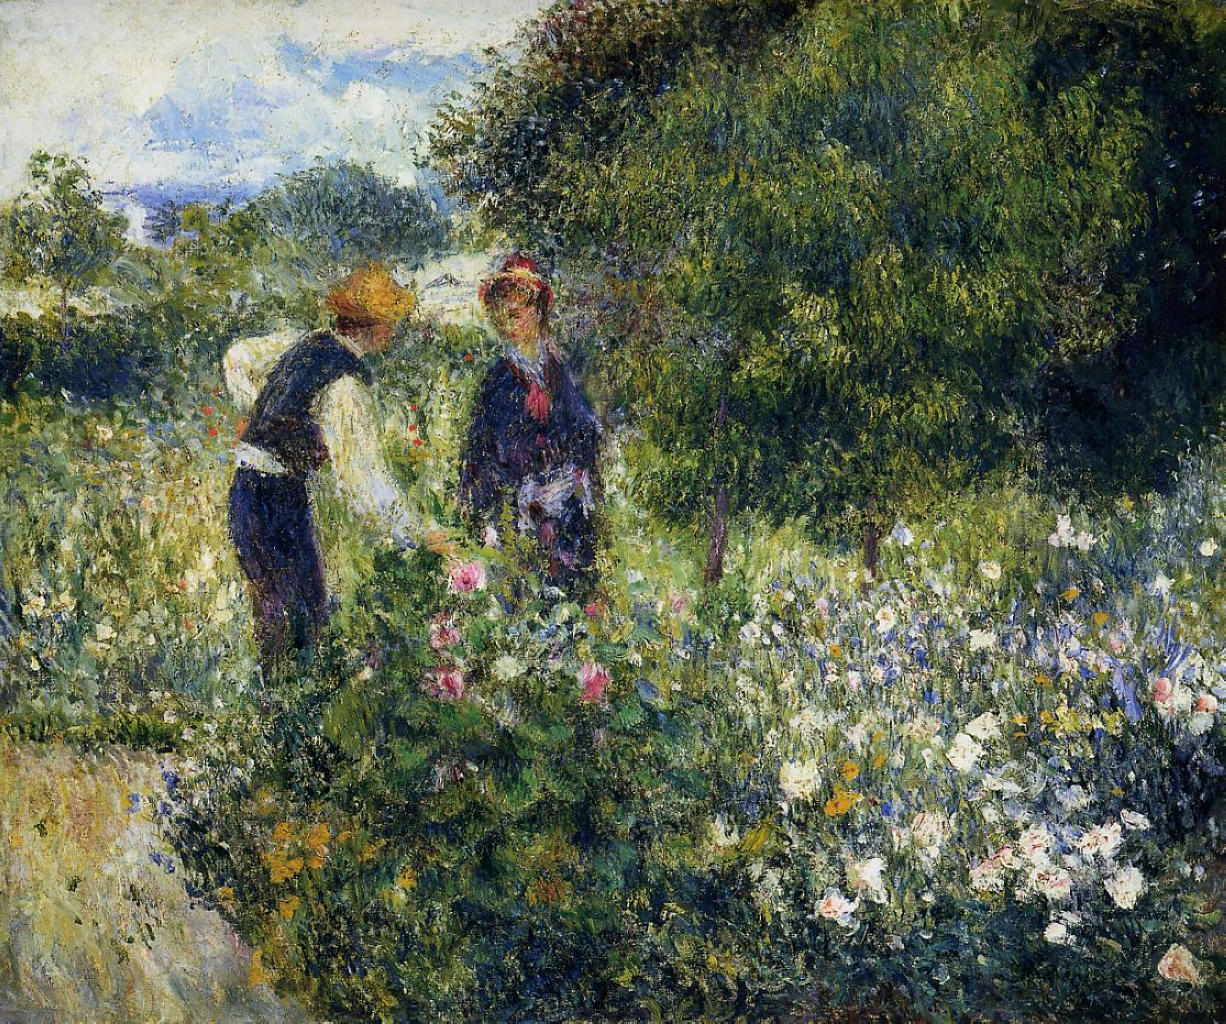 Pierre+Auguste+Renoir-1841-1-19 (605).jpg